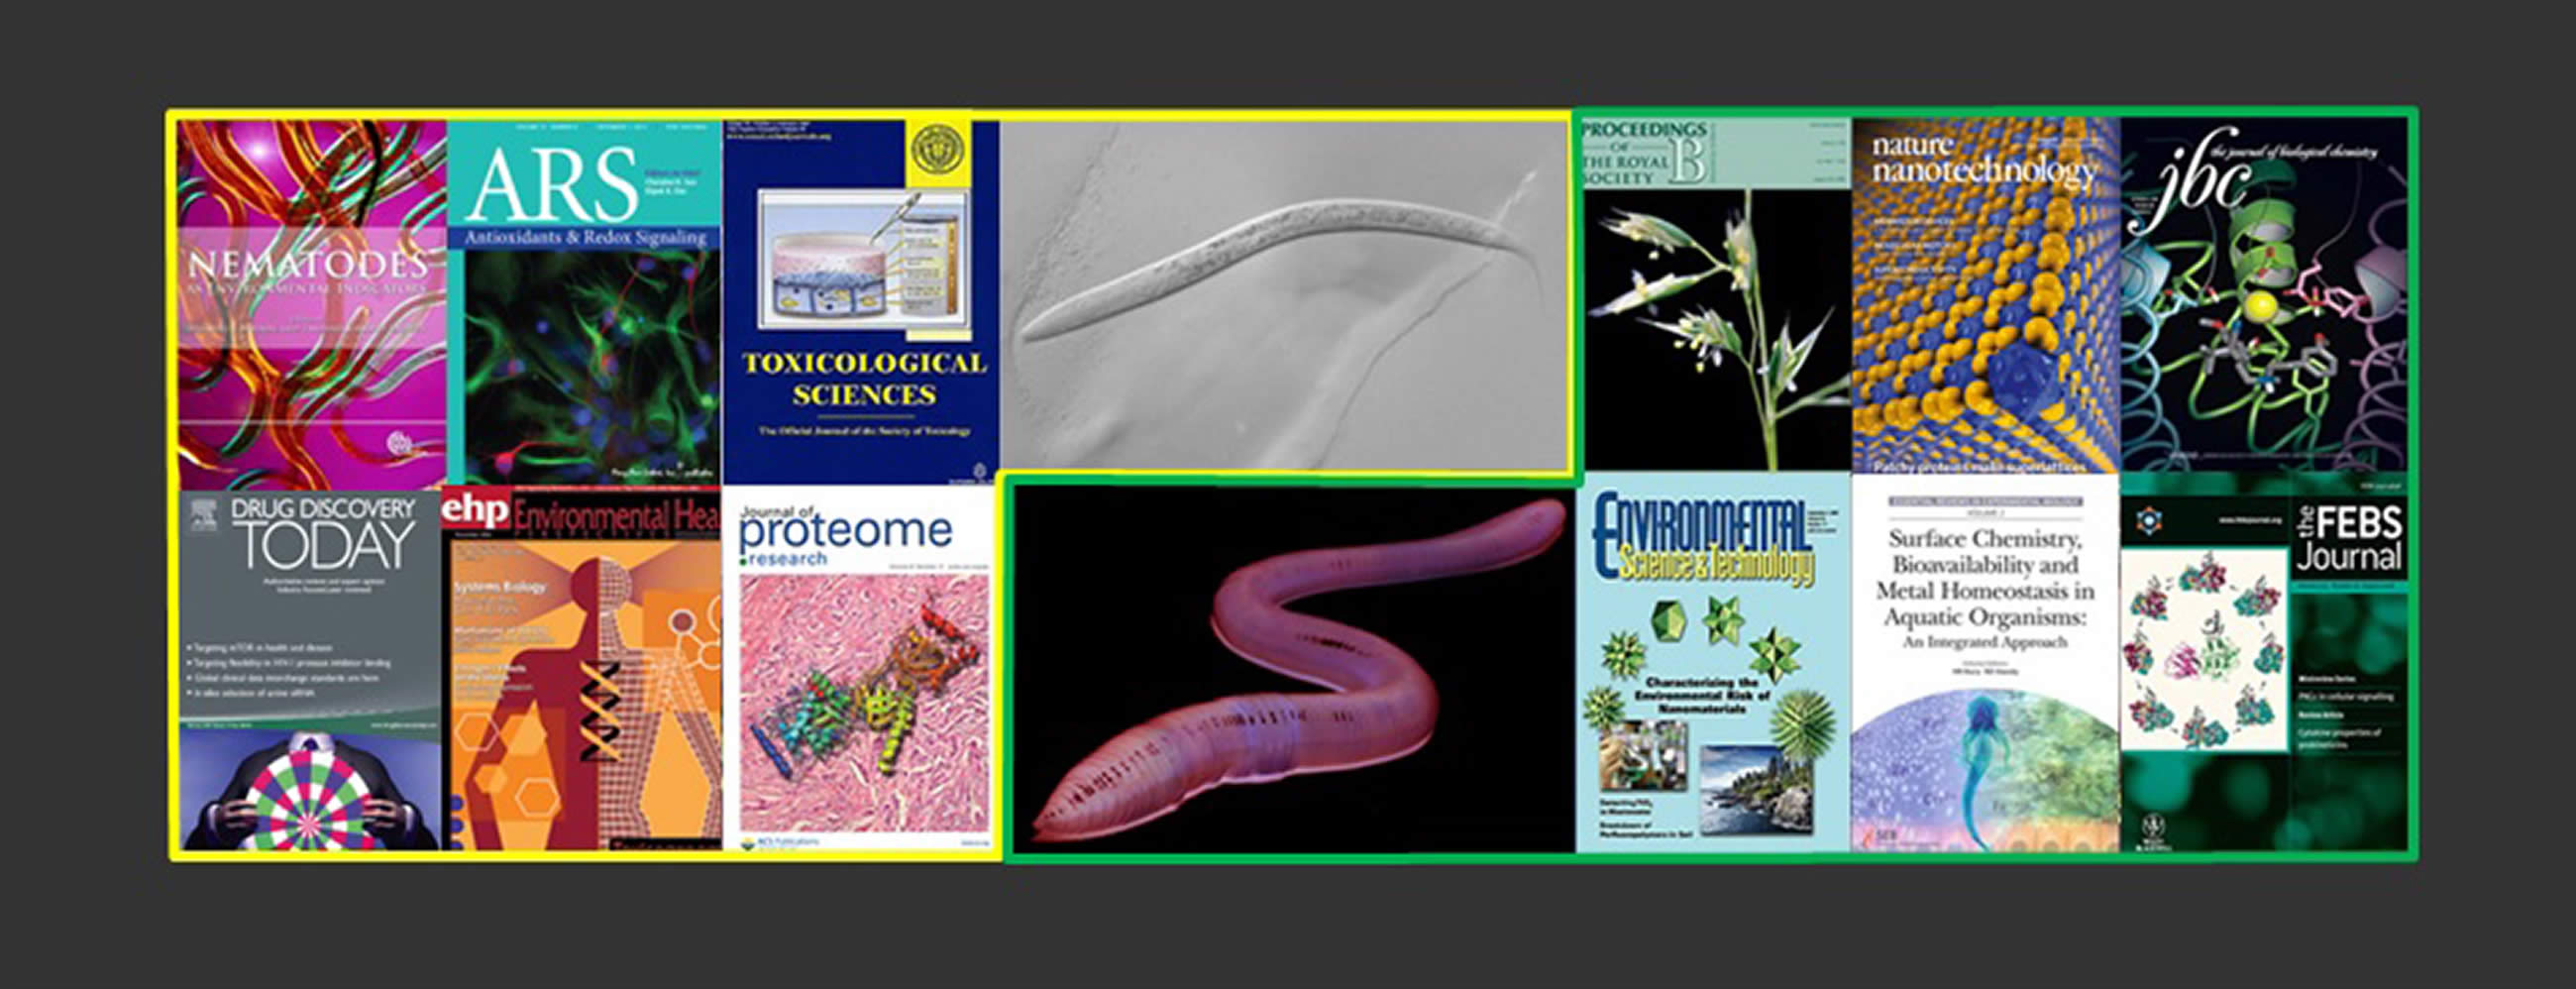 Toxicogenomics Publications